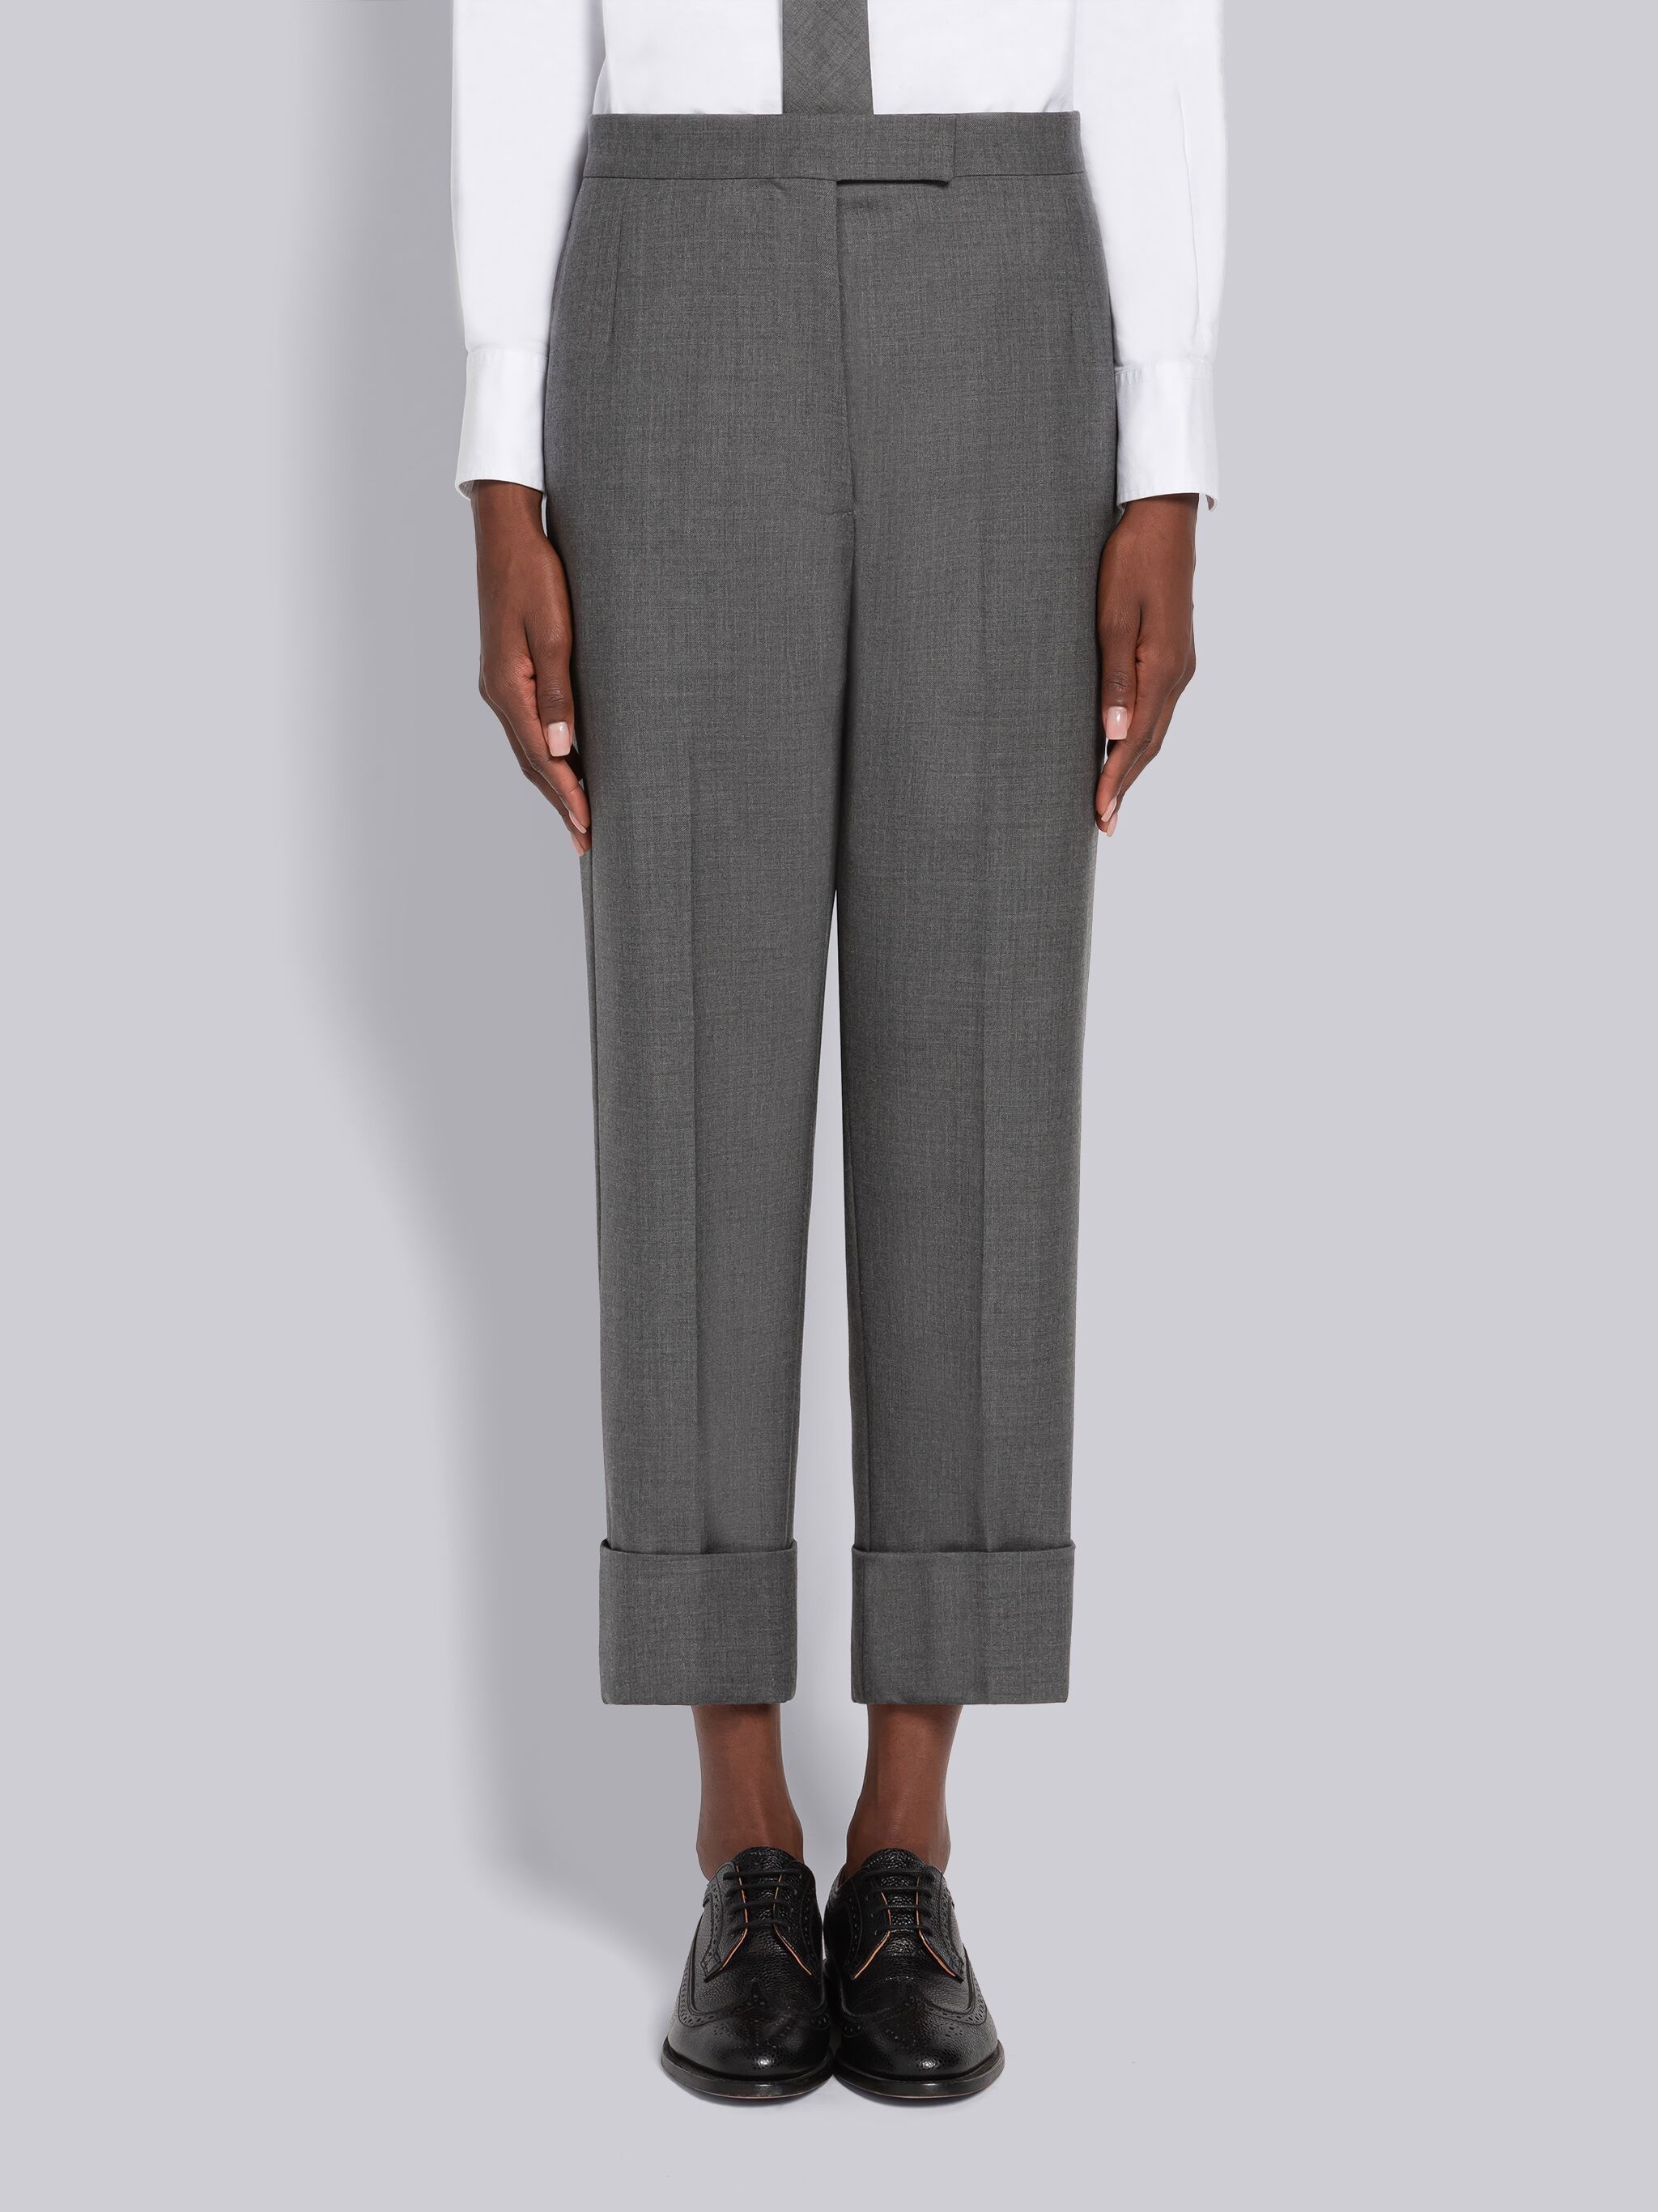 Medium Grey Super 120's Twill Menswear Fit Classic Trouser - 1